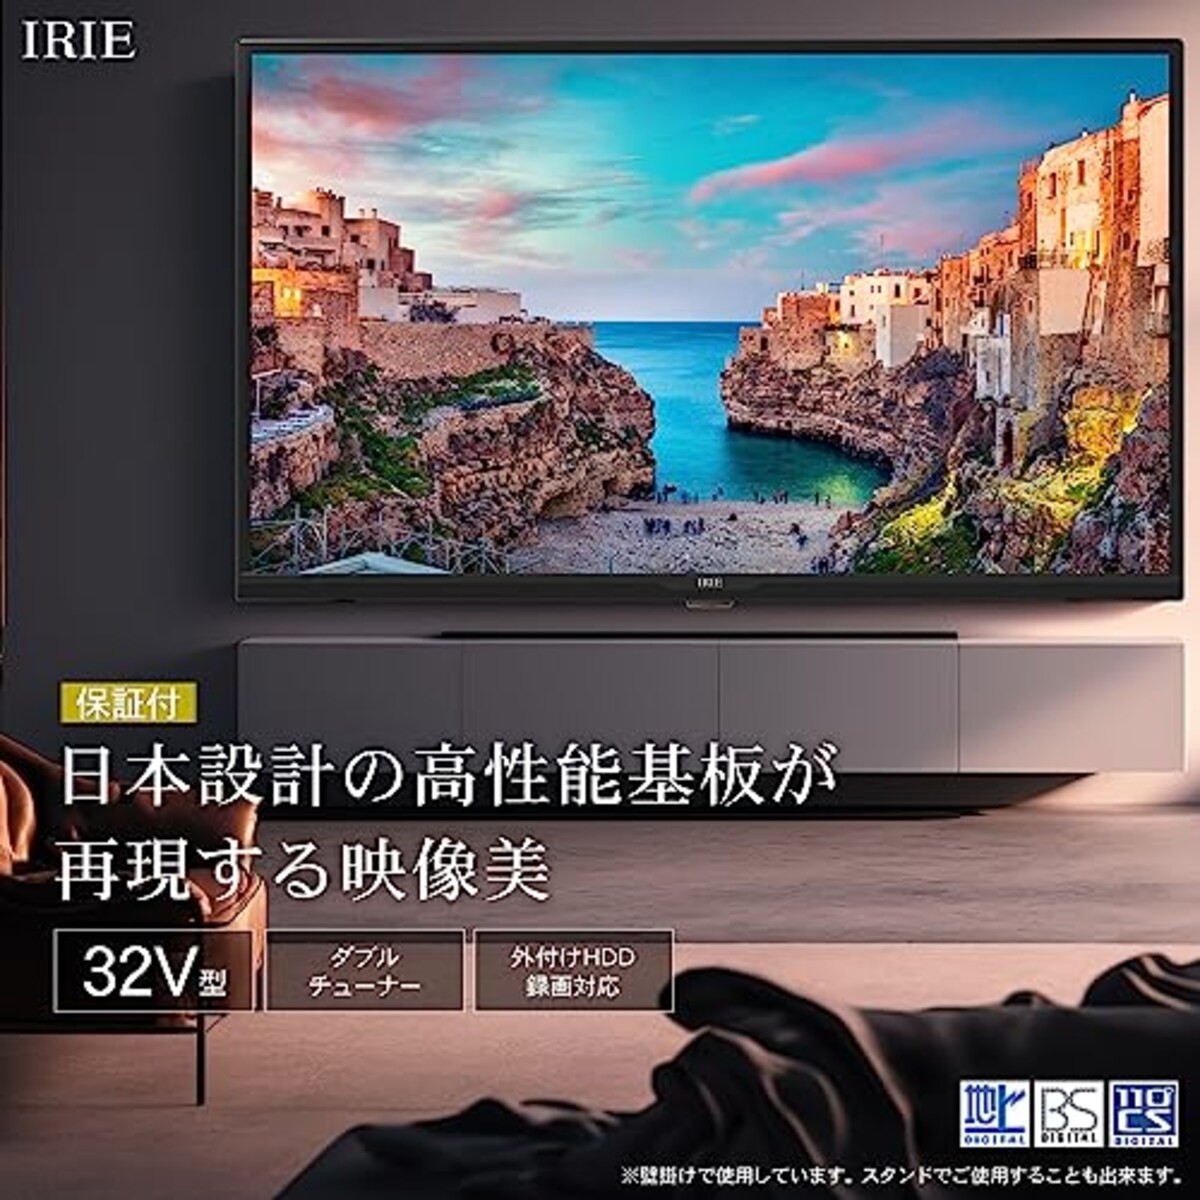  テレビ 32型 ダブルチューナー 裏番組録画 ハイビジョン 東芝ボード内蔵 外付けHDD対応 録画機能 日本メーカー 2022年モデル 壁掛けにも対応 irie アイリー FFF-TV32WBK2画像2 